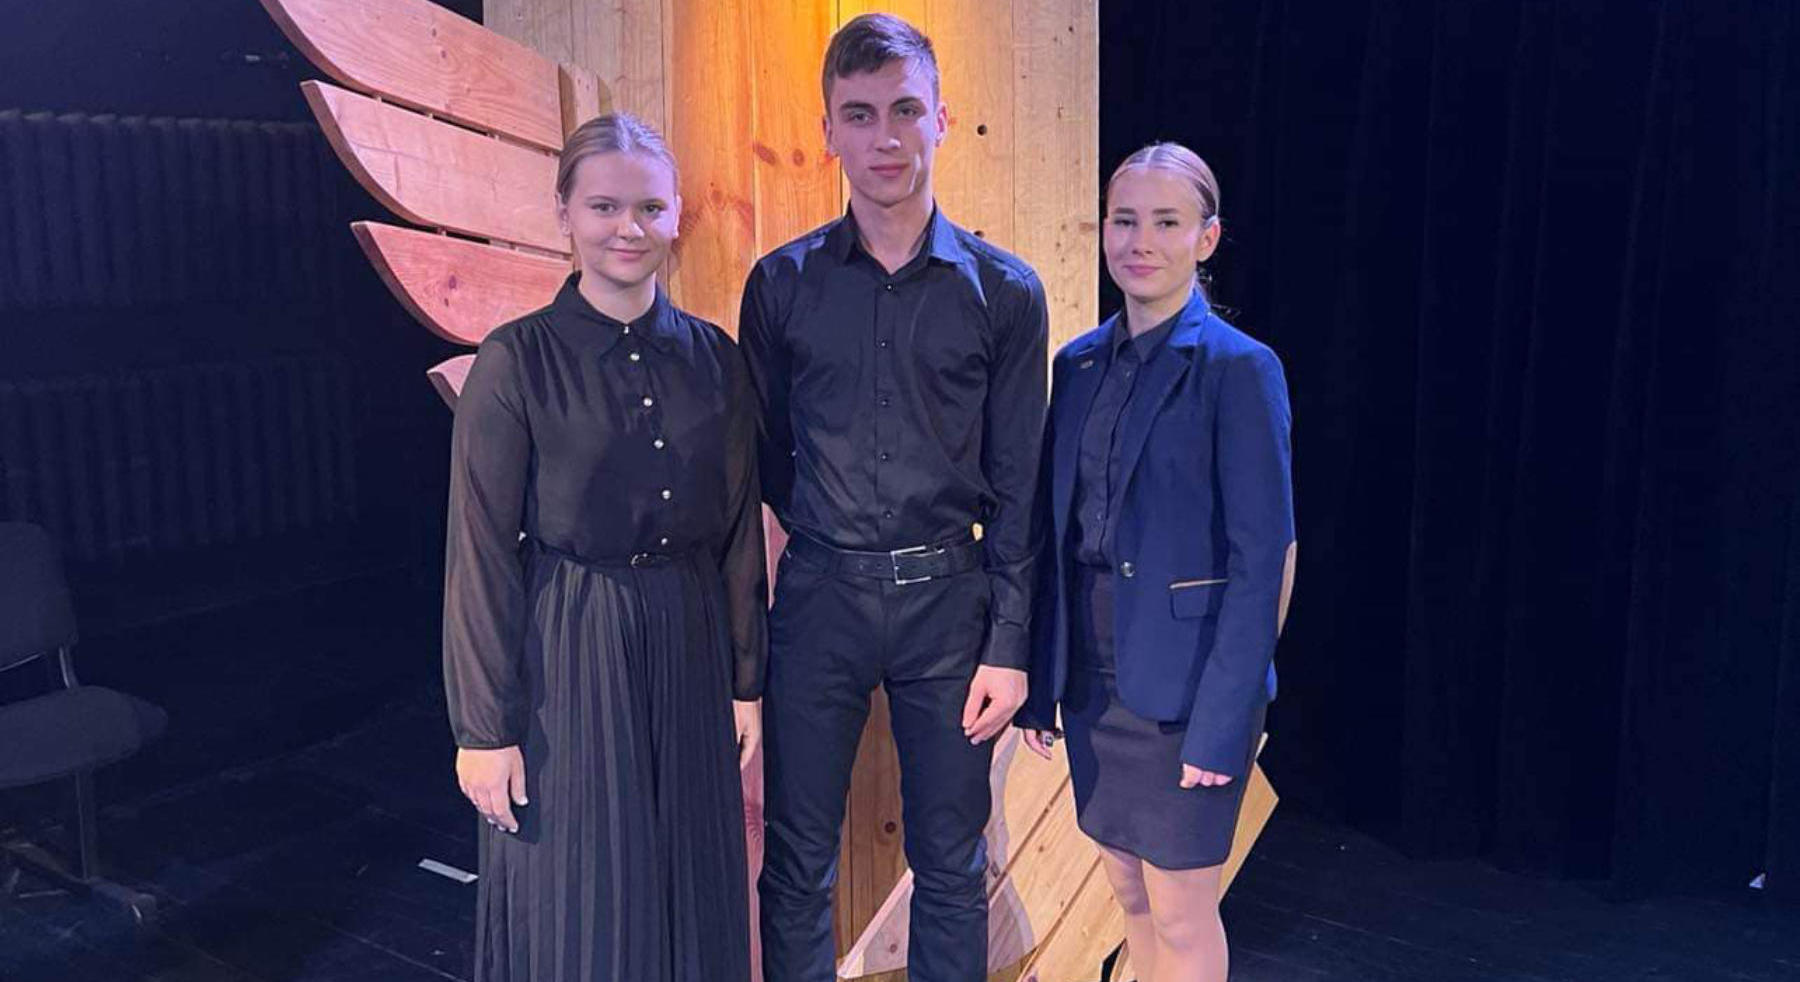 Troje uczestników z Litwy, Donata Savanevičiutė, Tomasz Sidorowicz i Maria Magdalena Mironczik, zdobyło w konkursie cztery nagrody.